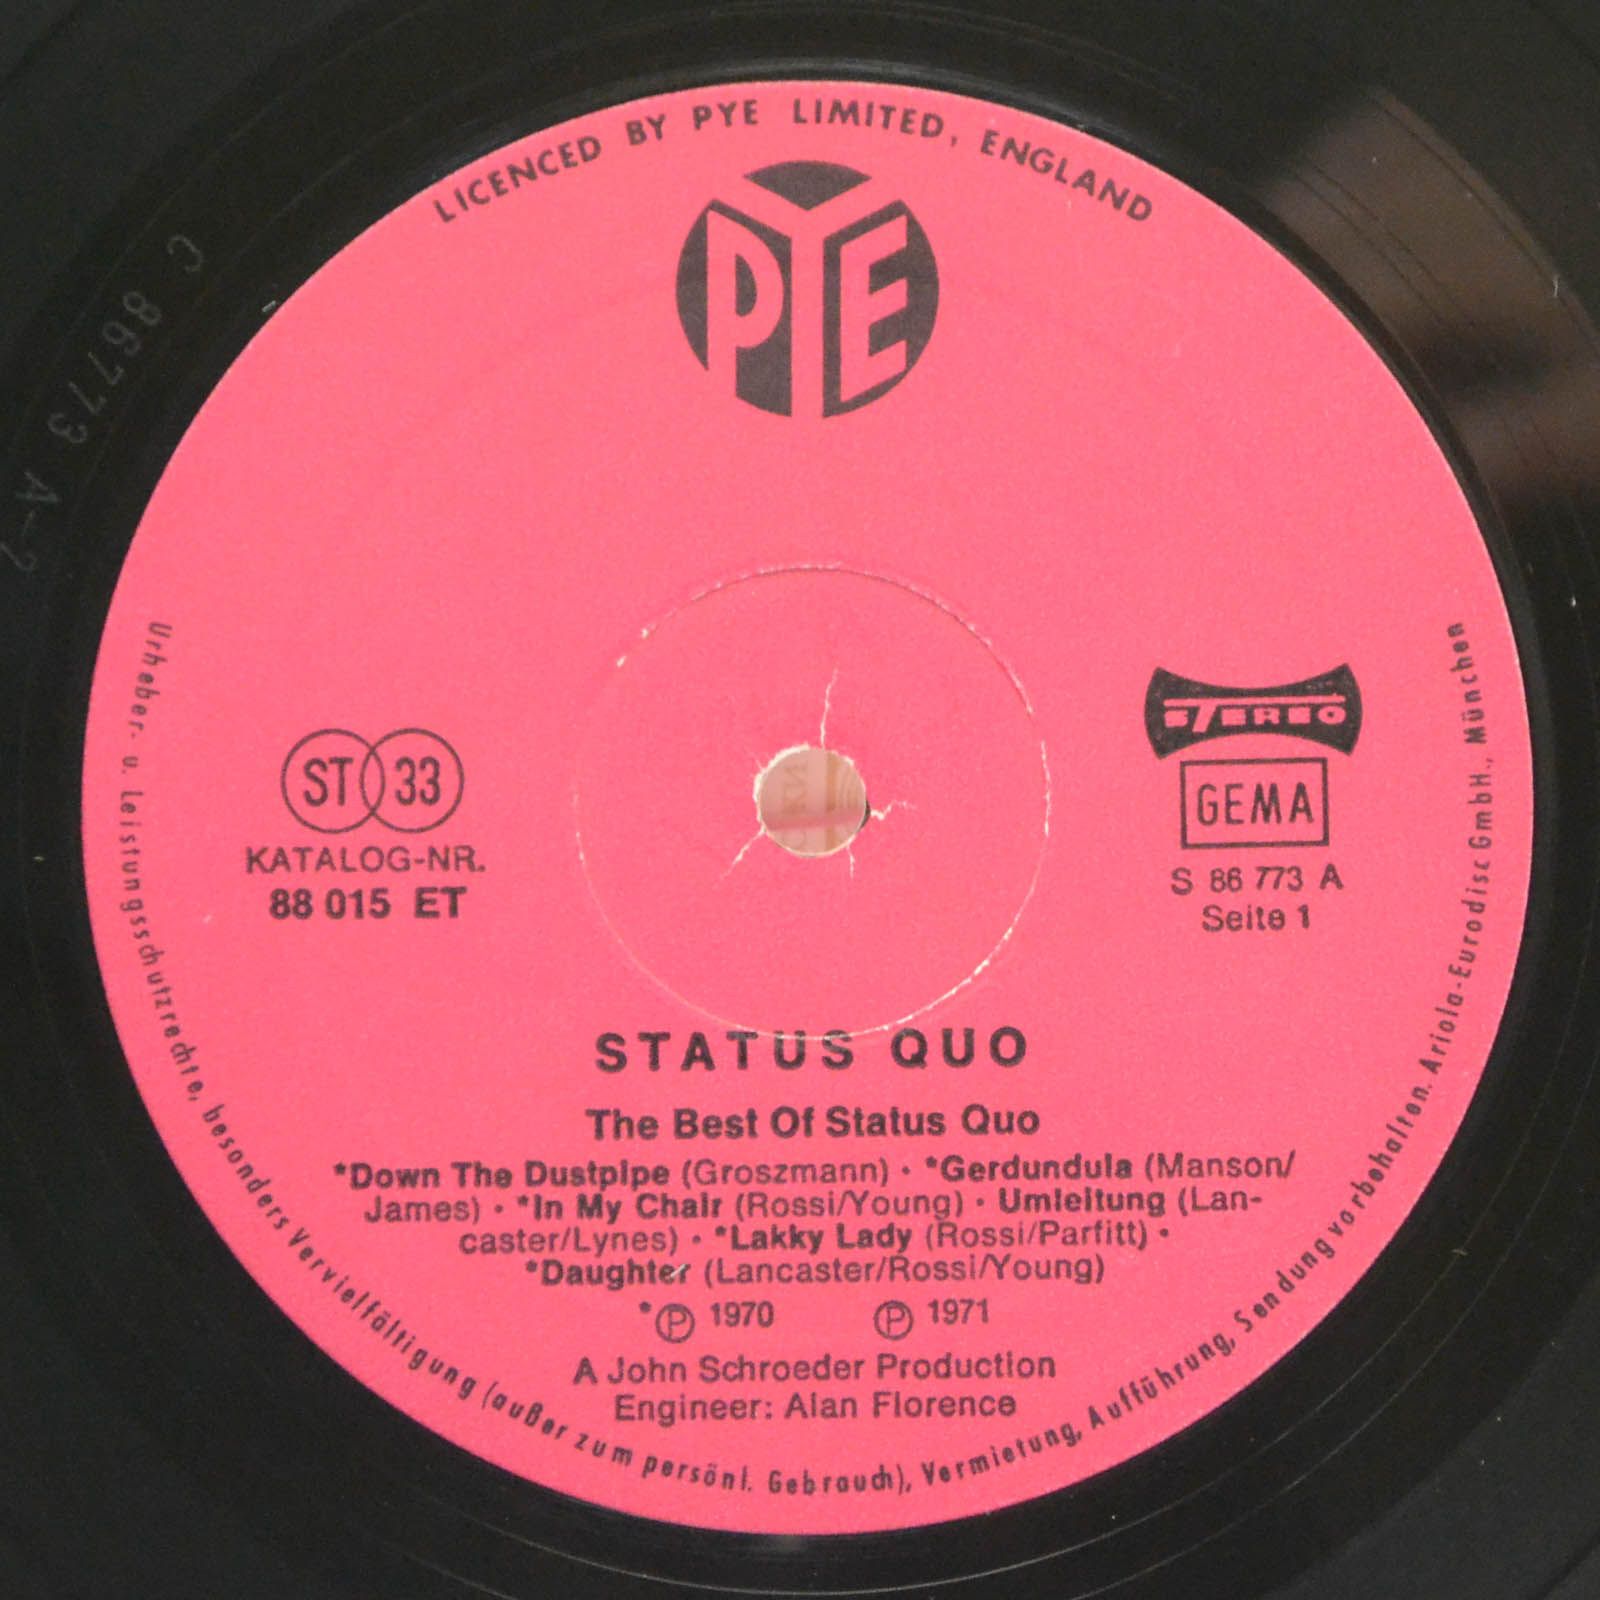 Status Quo — The Best Of Status Quo, 1971